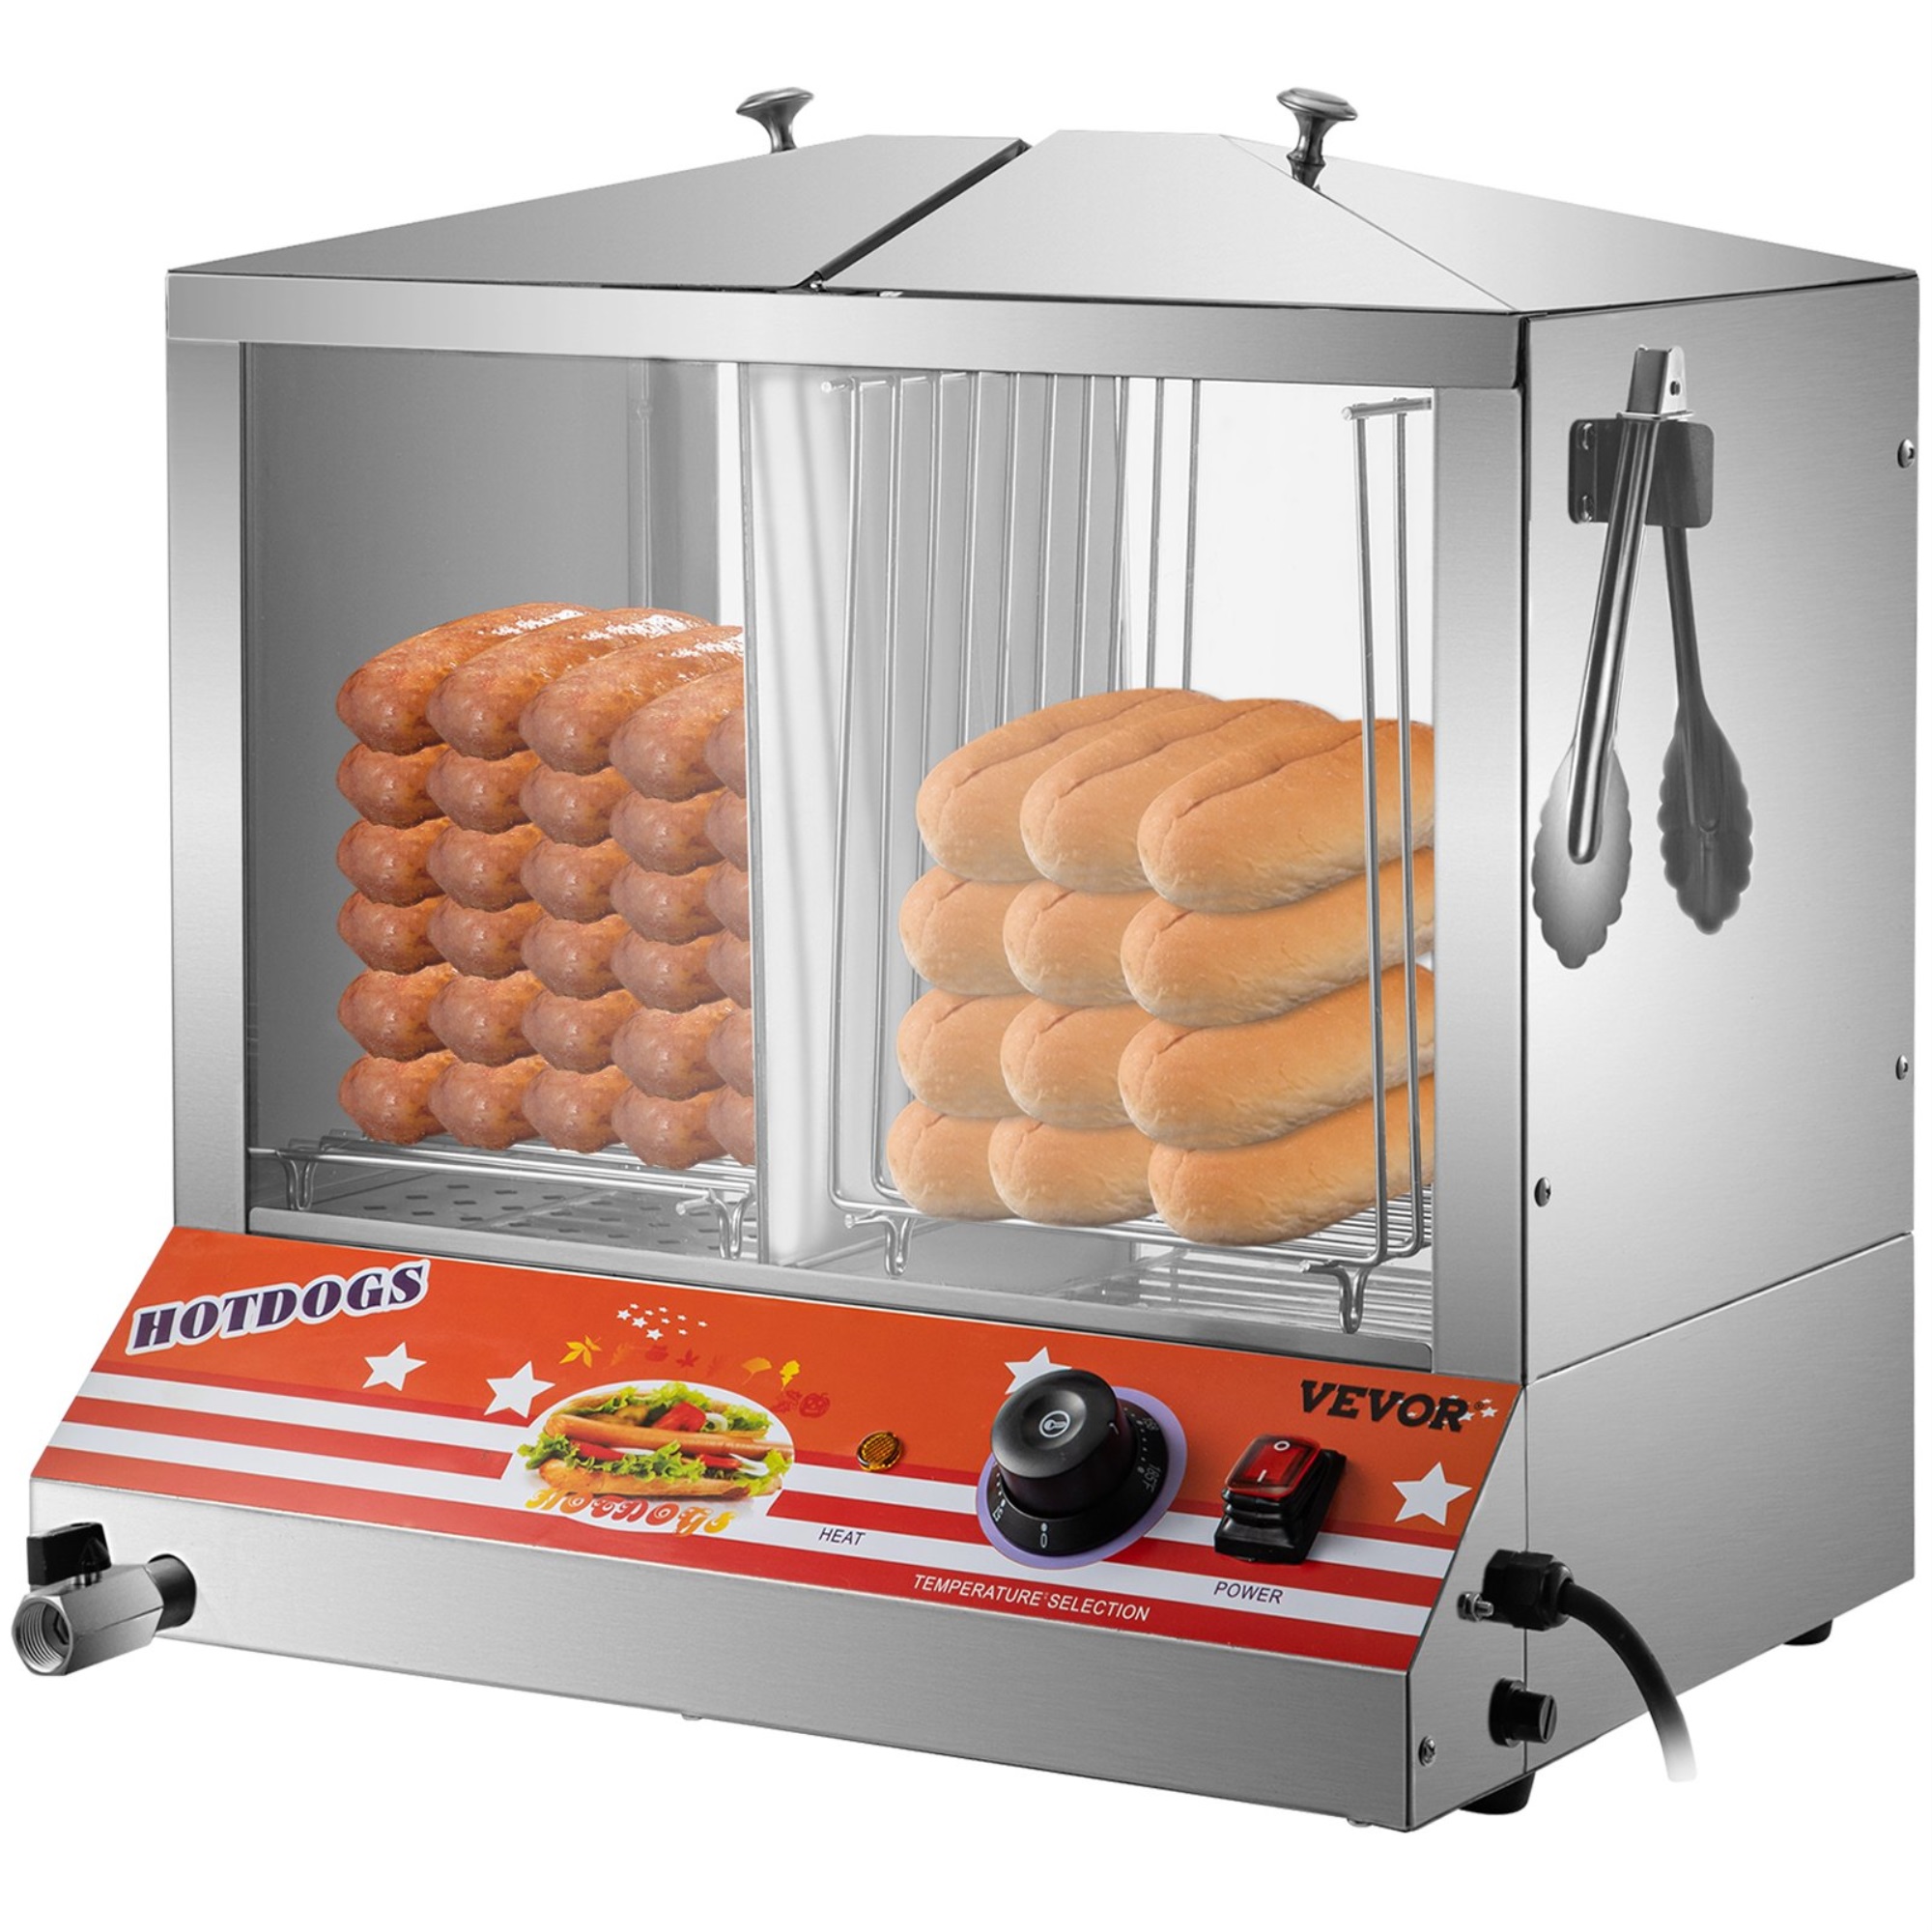 Vevor 1200w Commercial Hot Dog Hut Steamer Electric Top Loading Food Bun Warmer